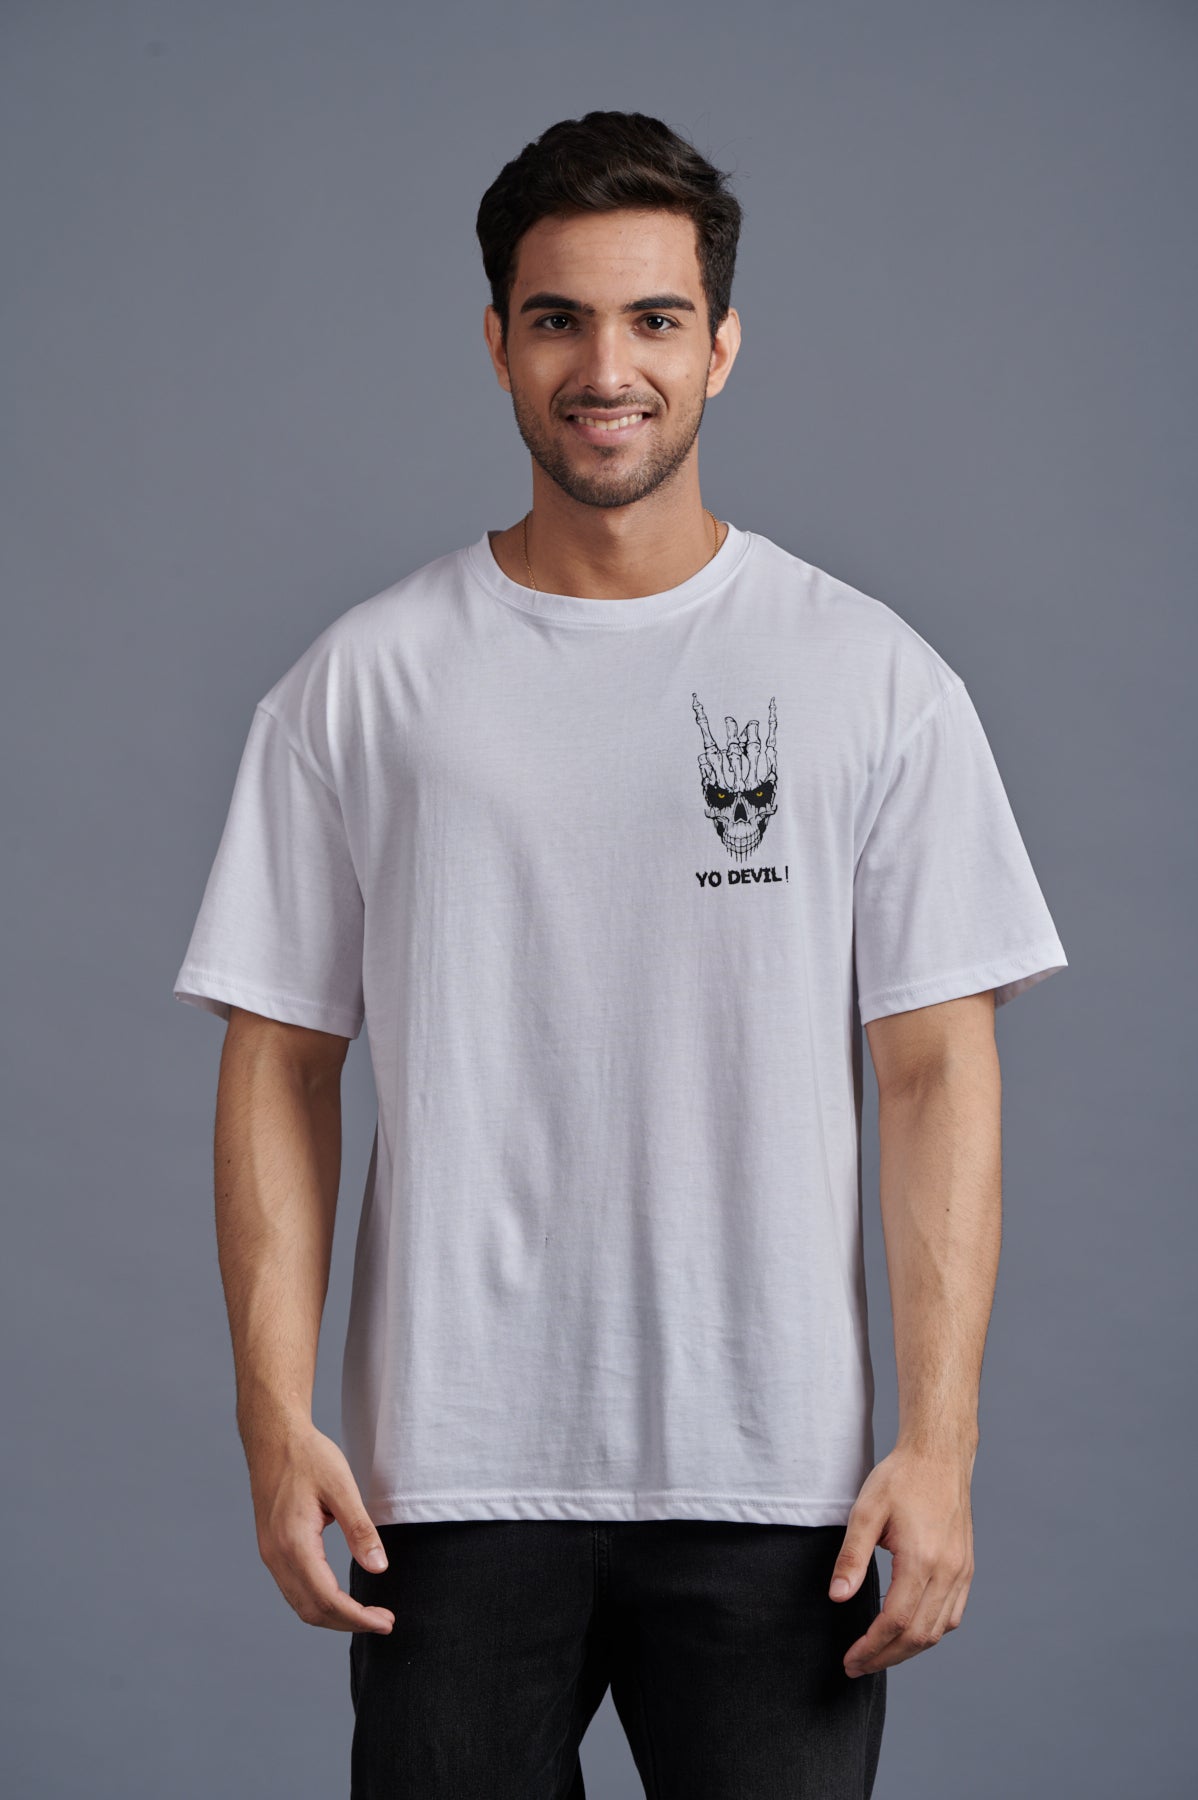 Yo Devil! Printed Oversized White T-Shirt for Men - Go Devil